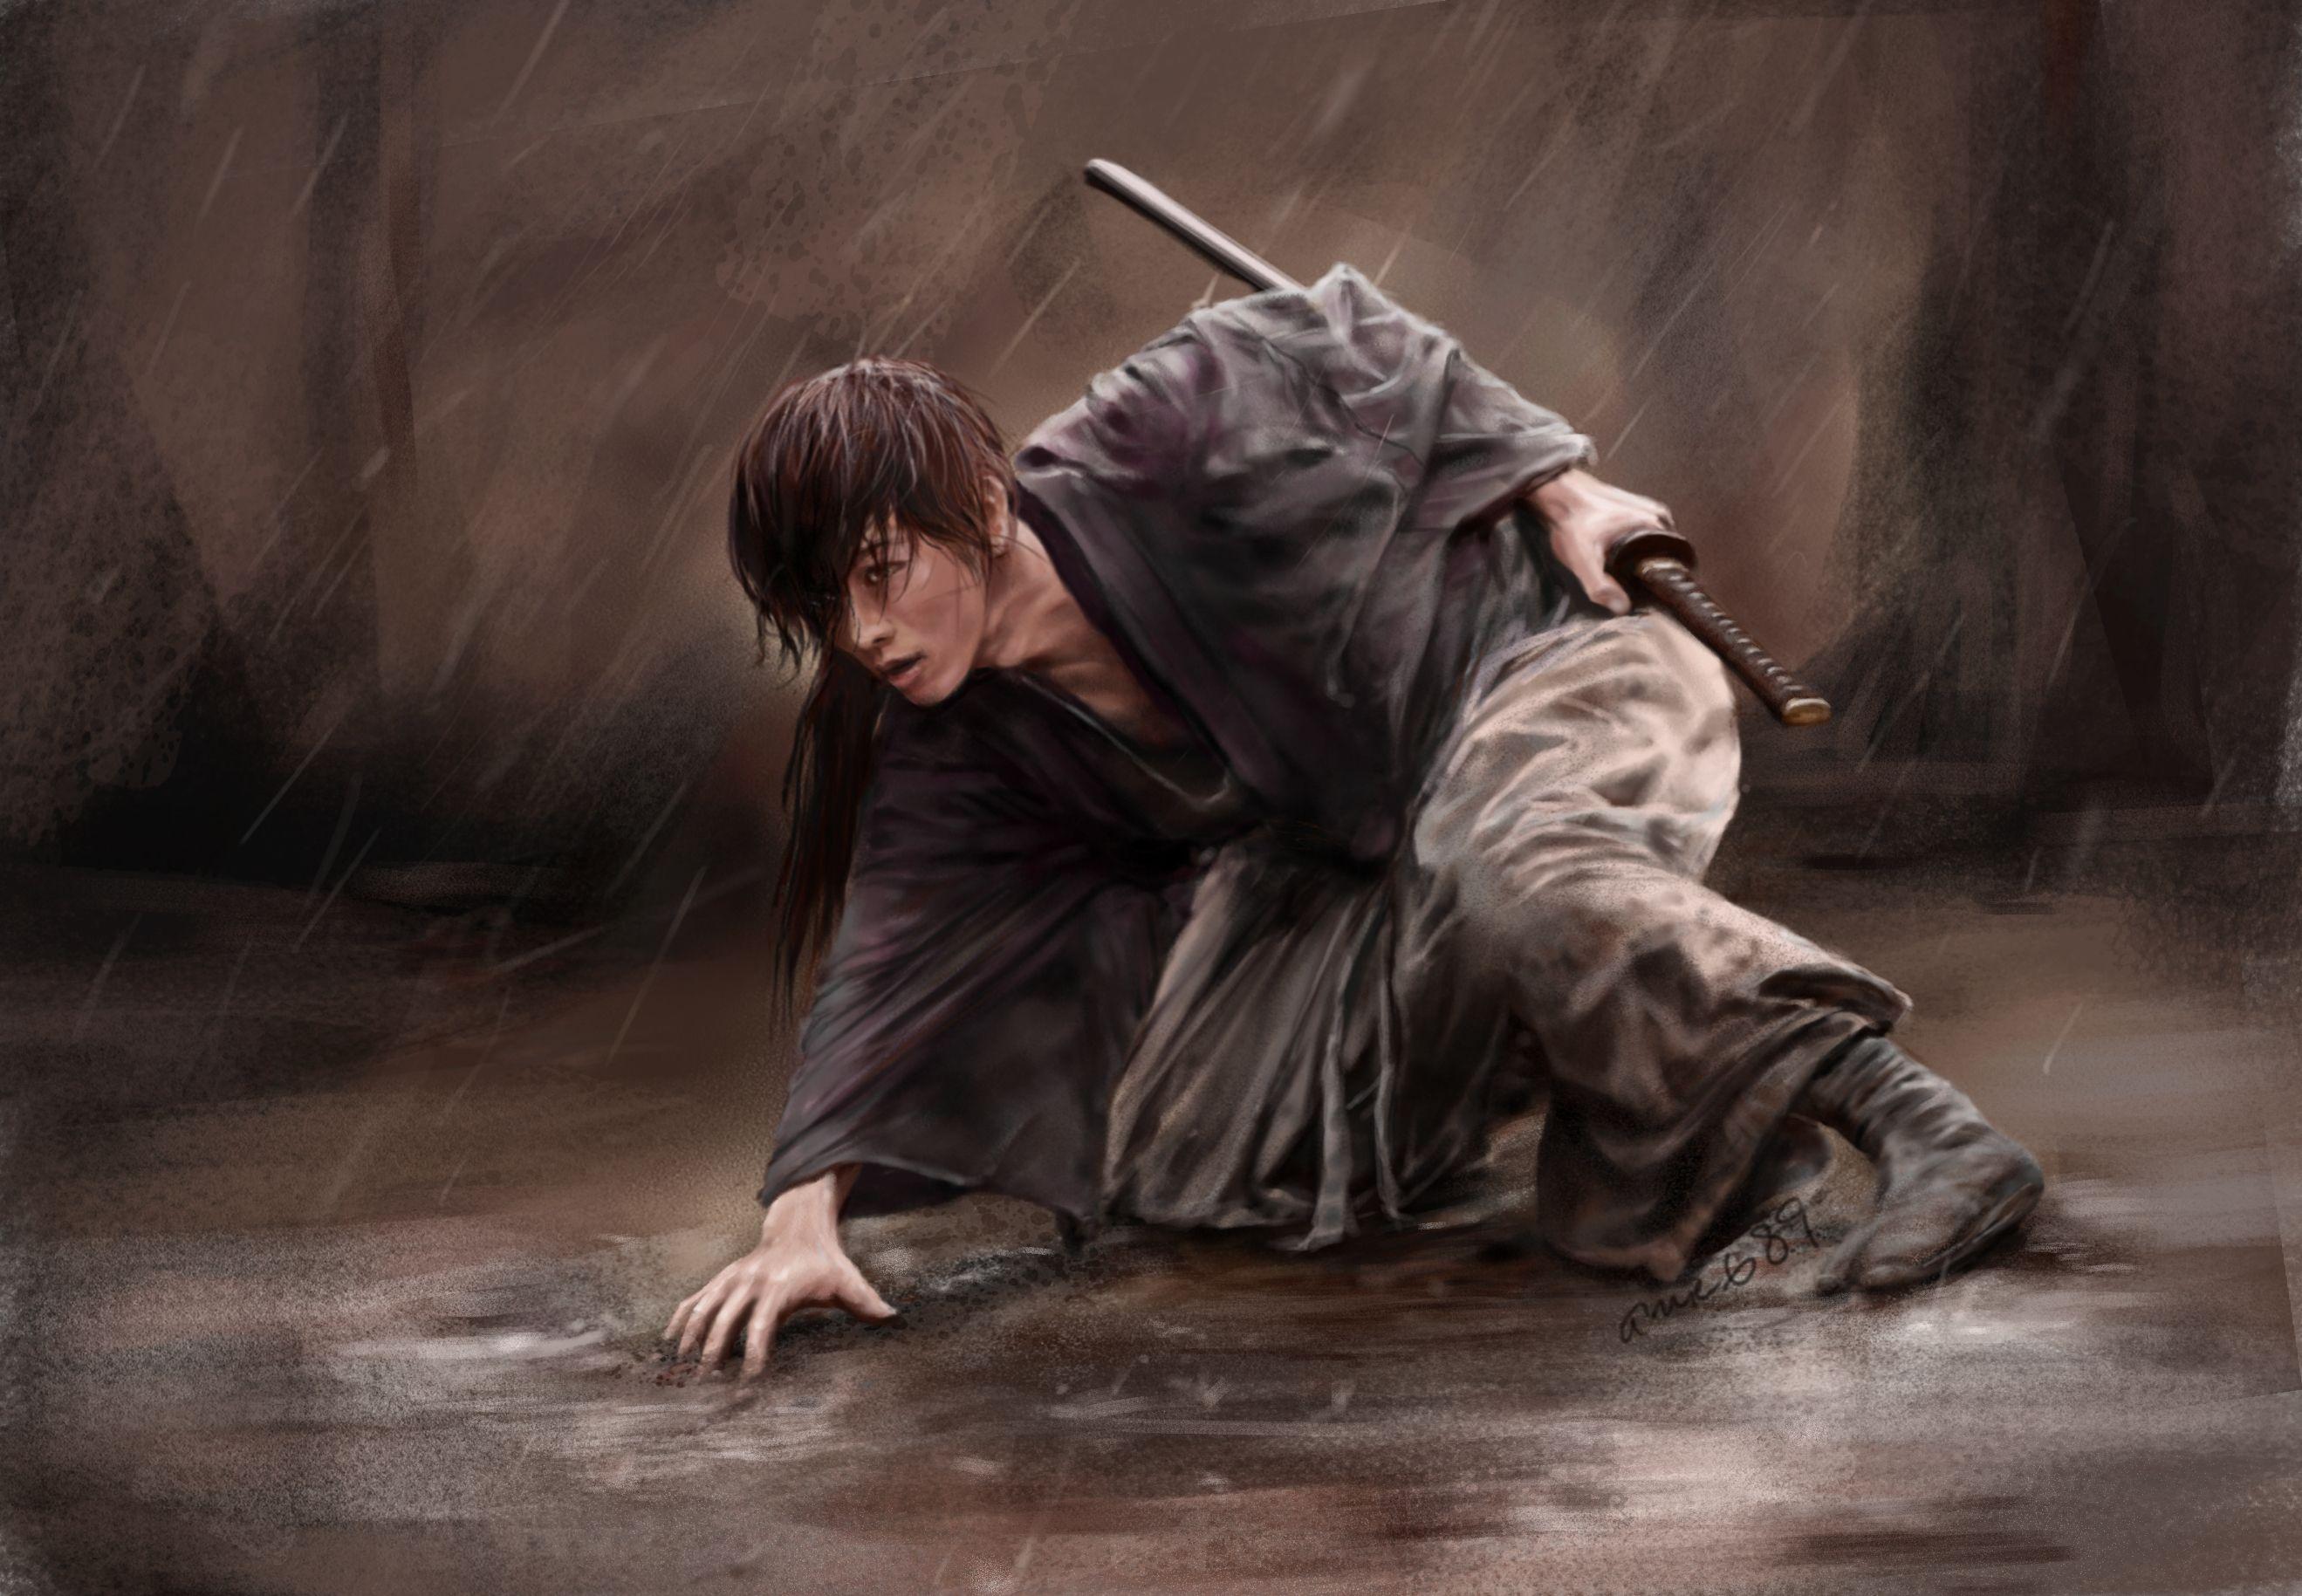 Rurouni Kenshin Movie Wallpapers - Top Free Rurouni Kenshin Movie